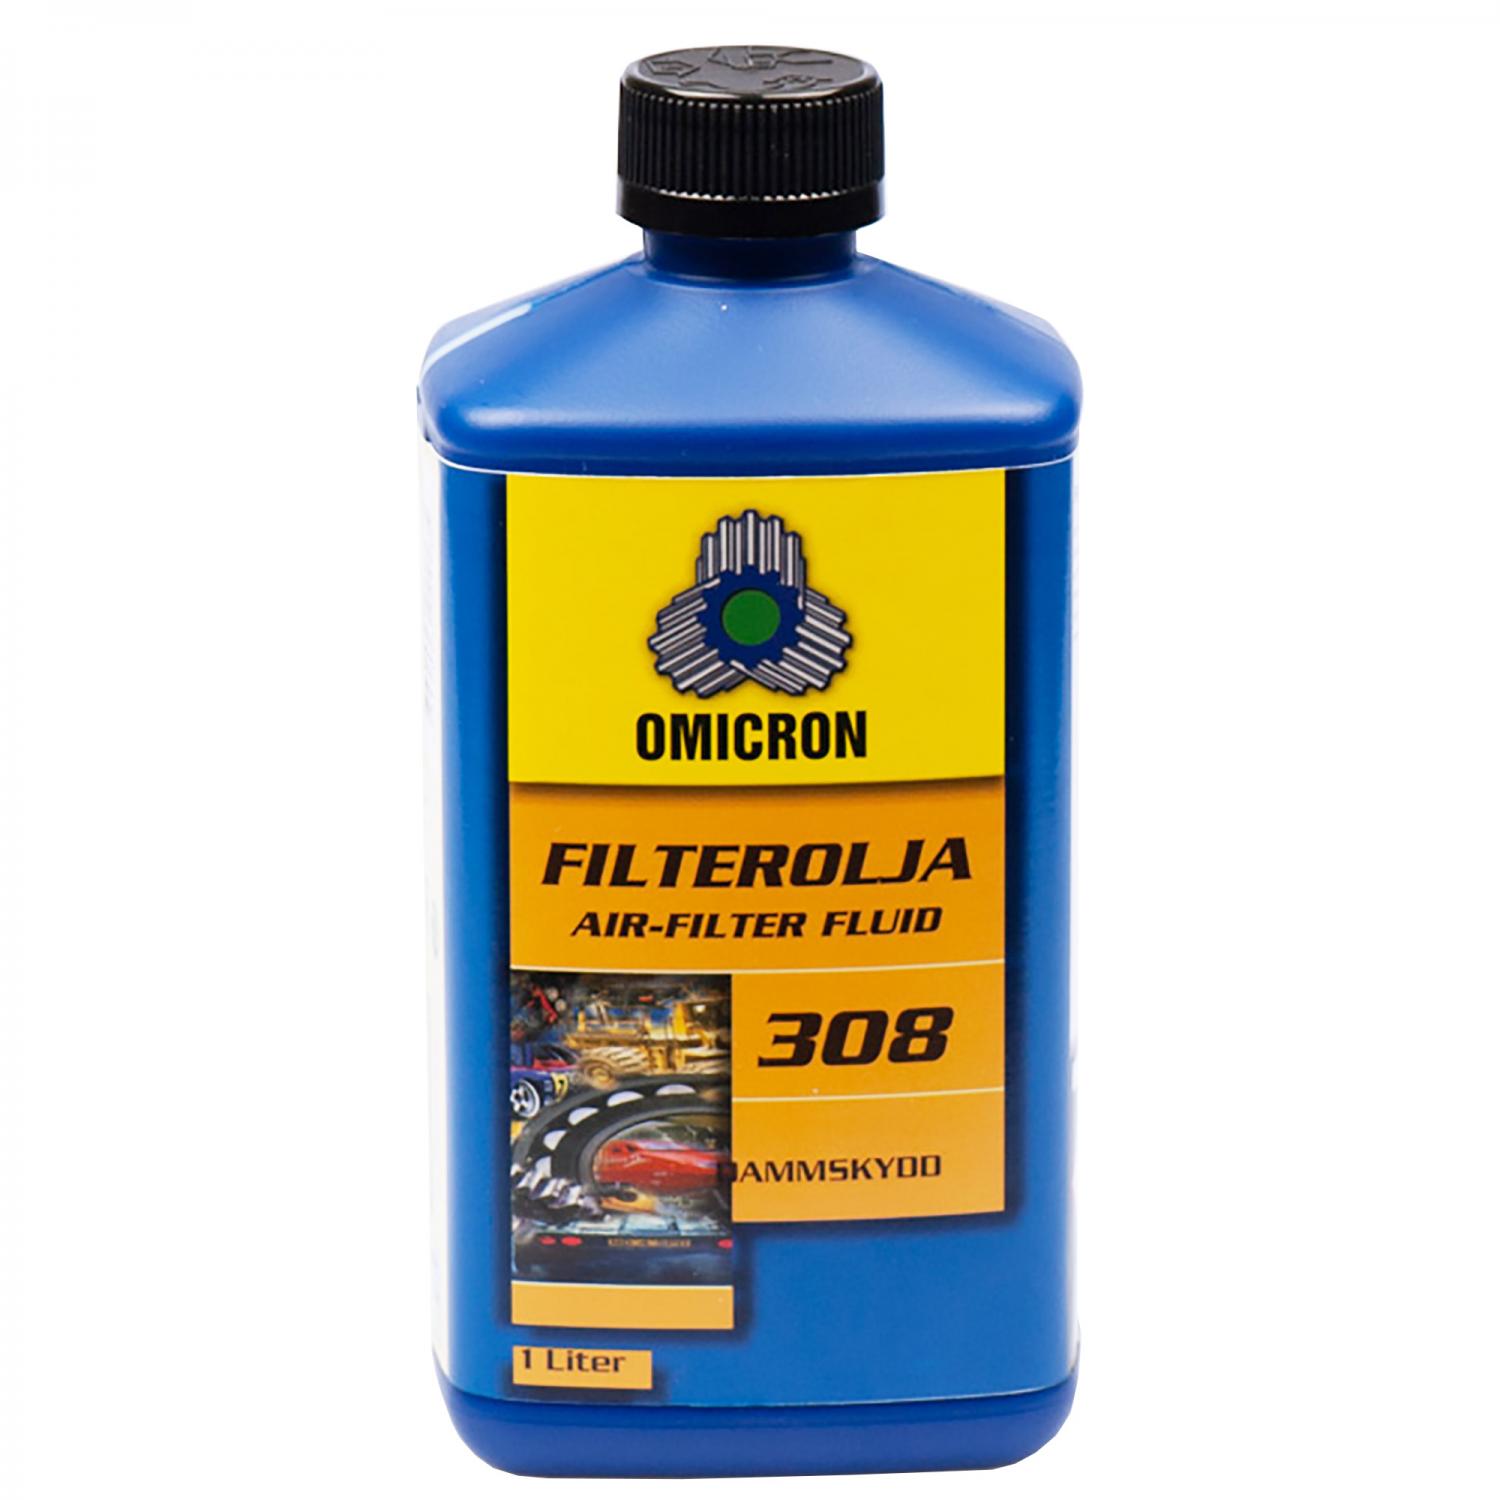 Omicron 308 Filterolja 1L